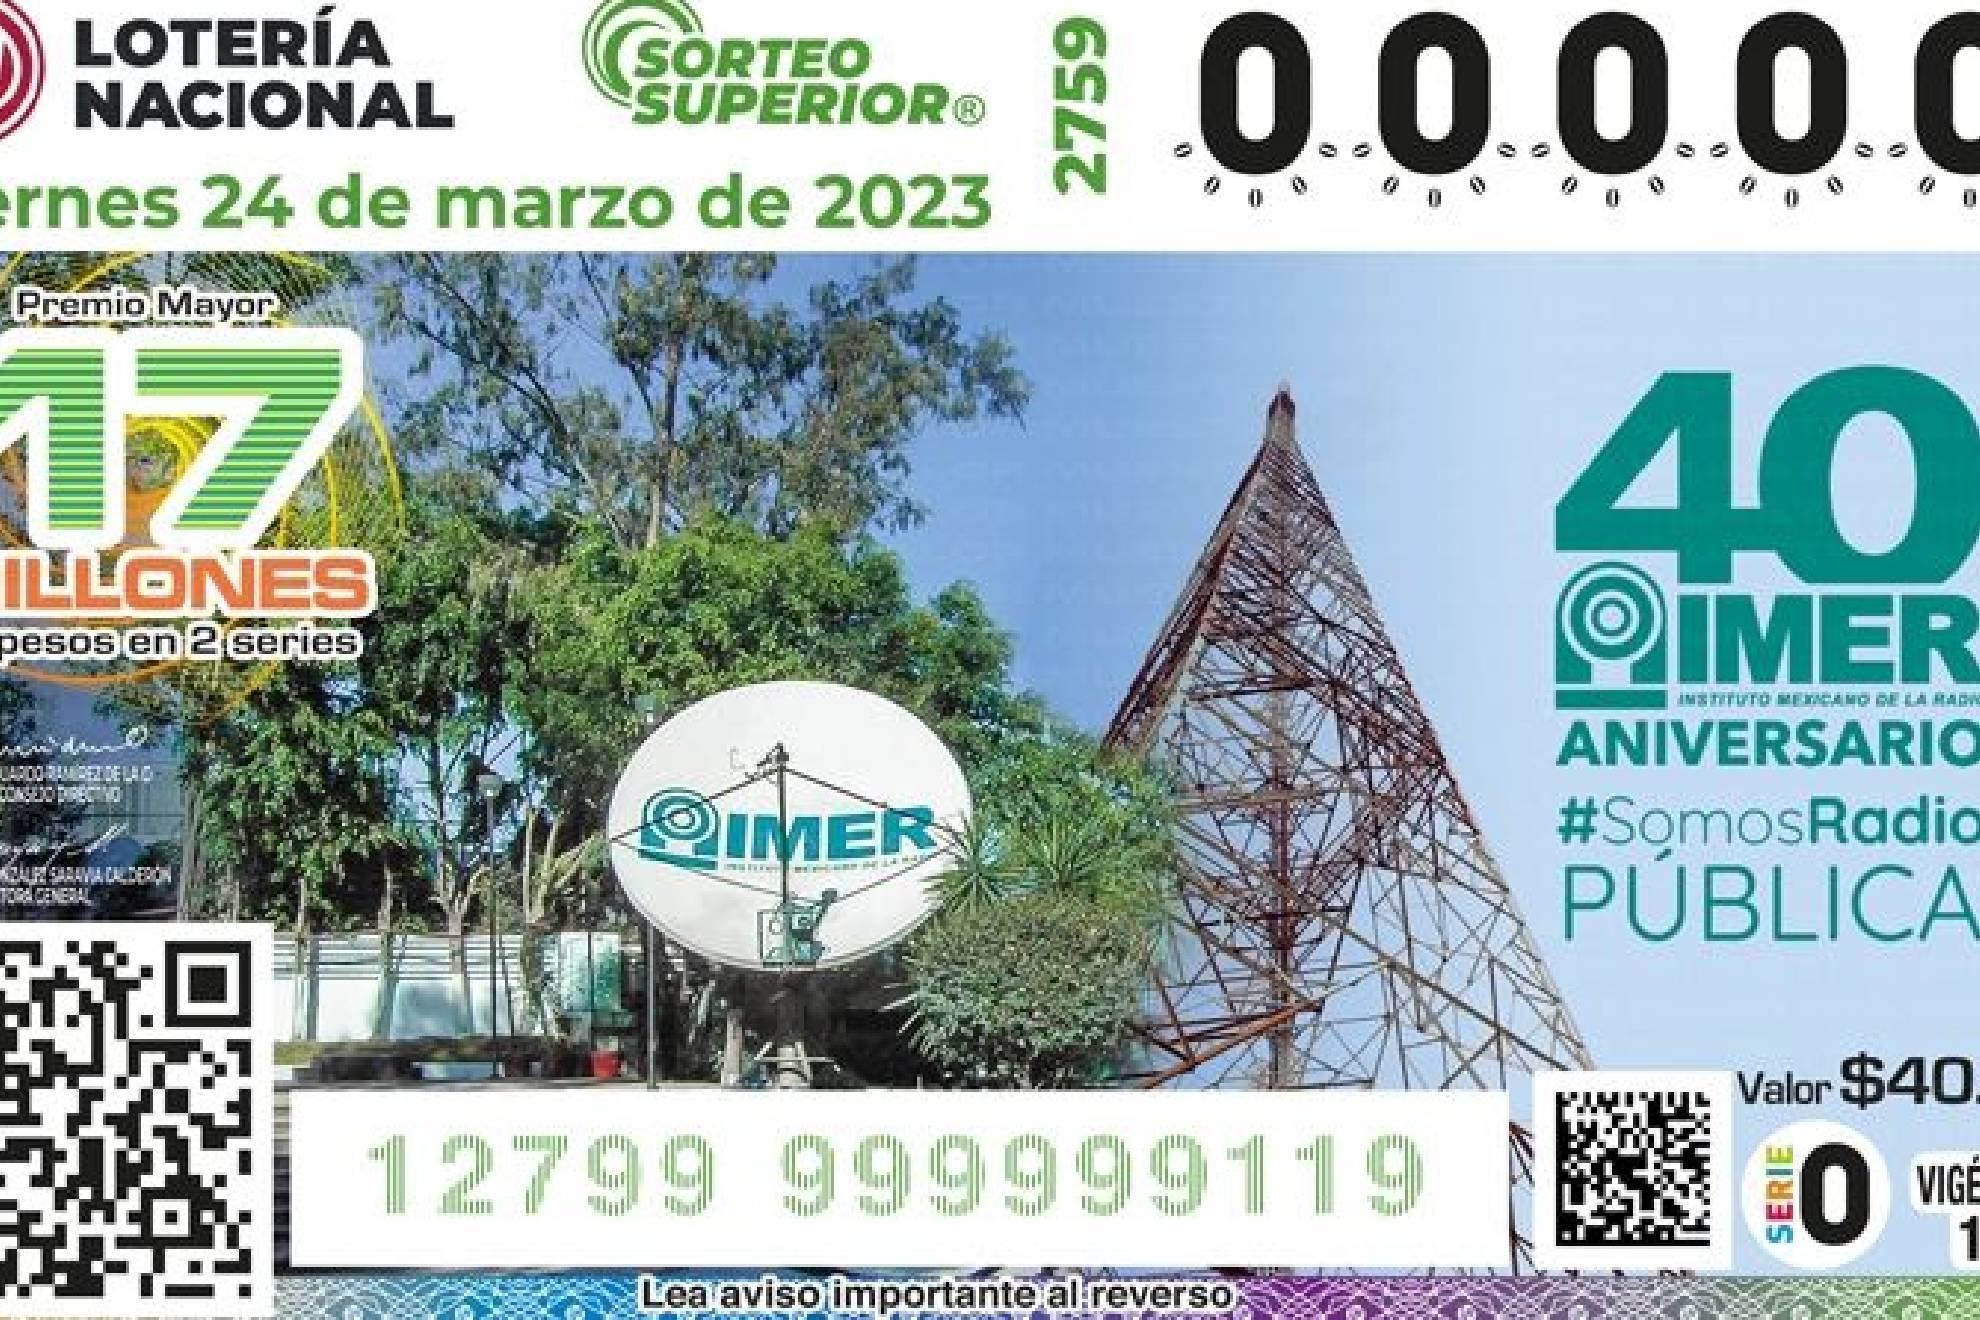 Lotería Nacional realiza el esperado Sorteo Superior 2759.